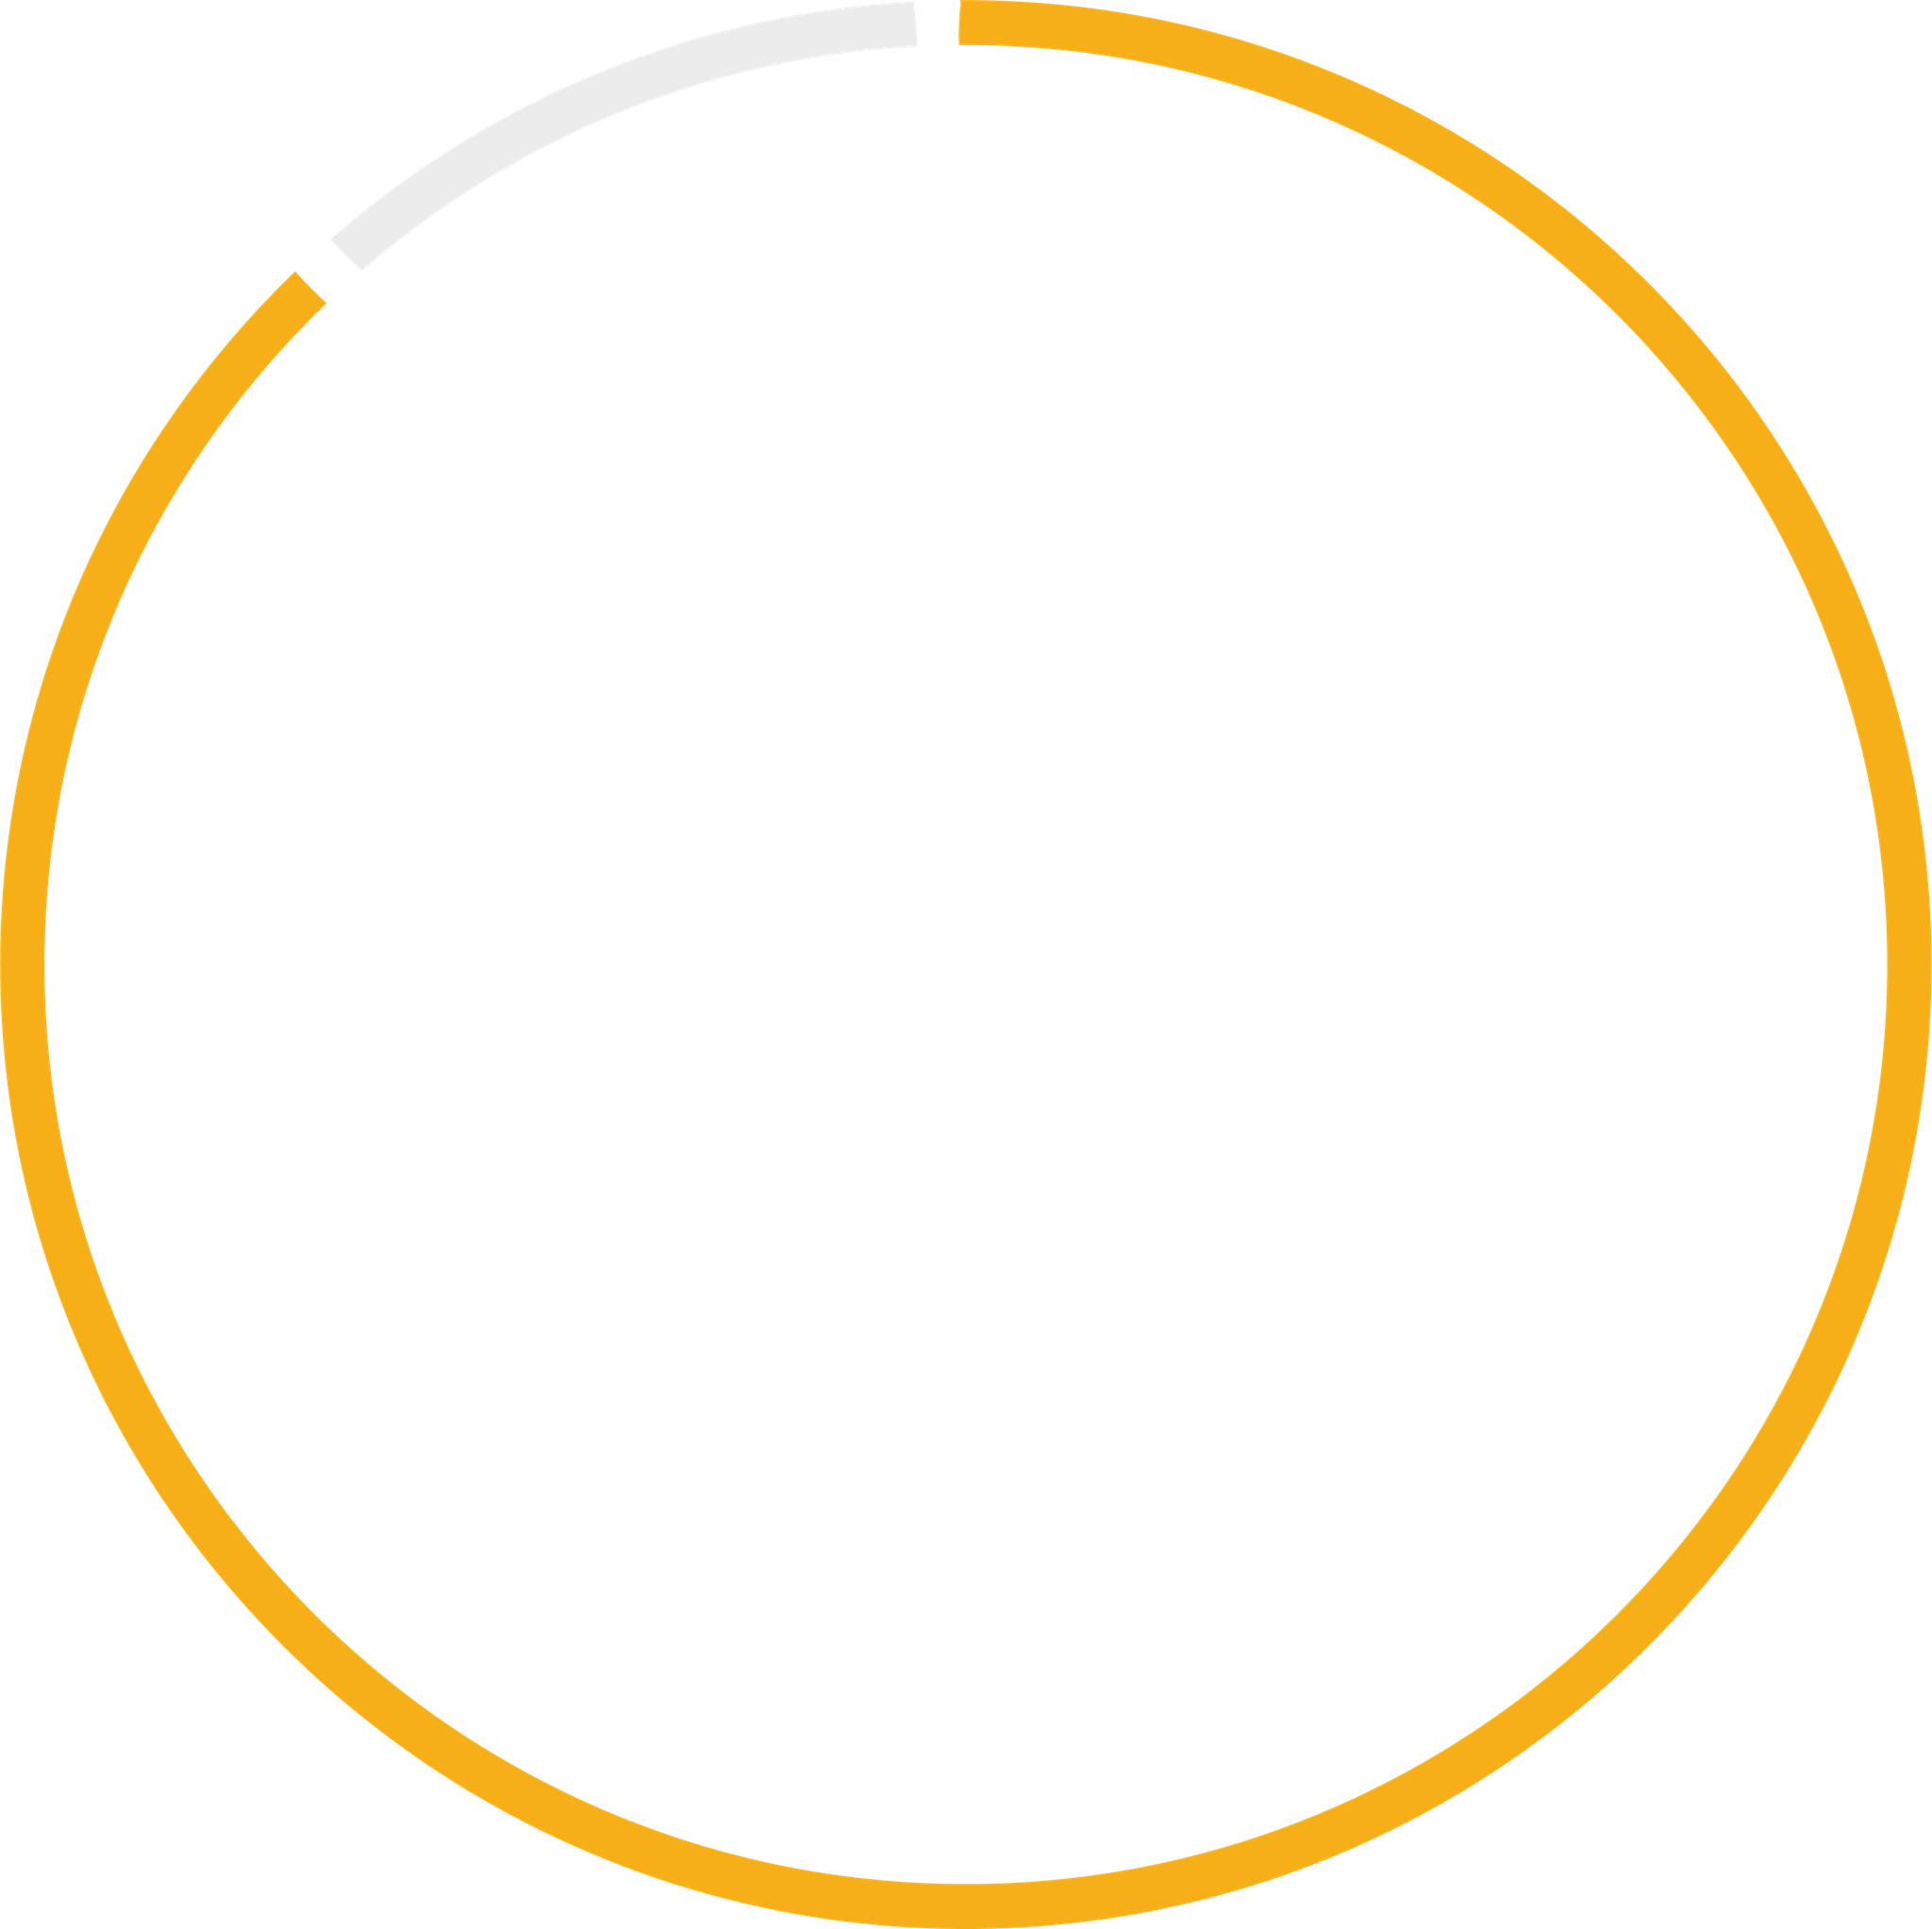 Logo firmy Slayo